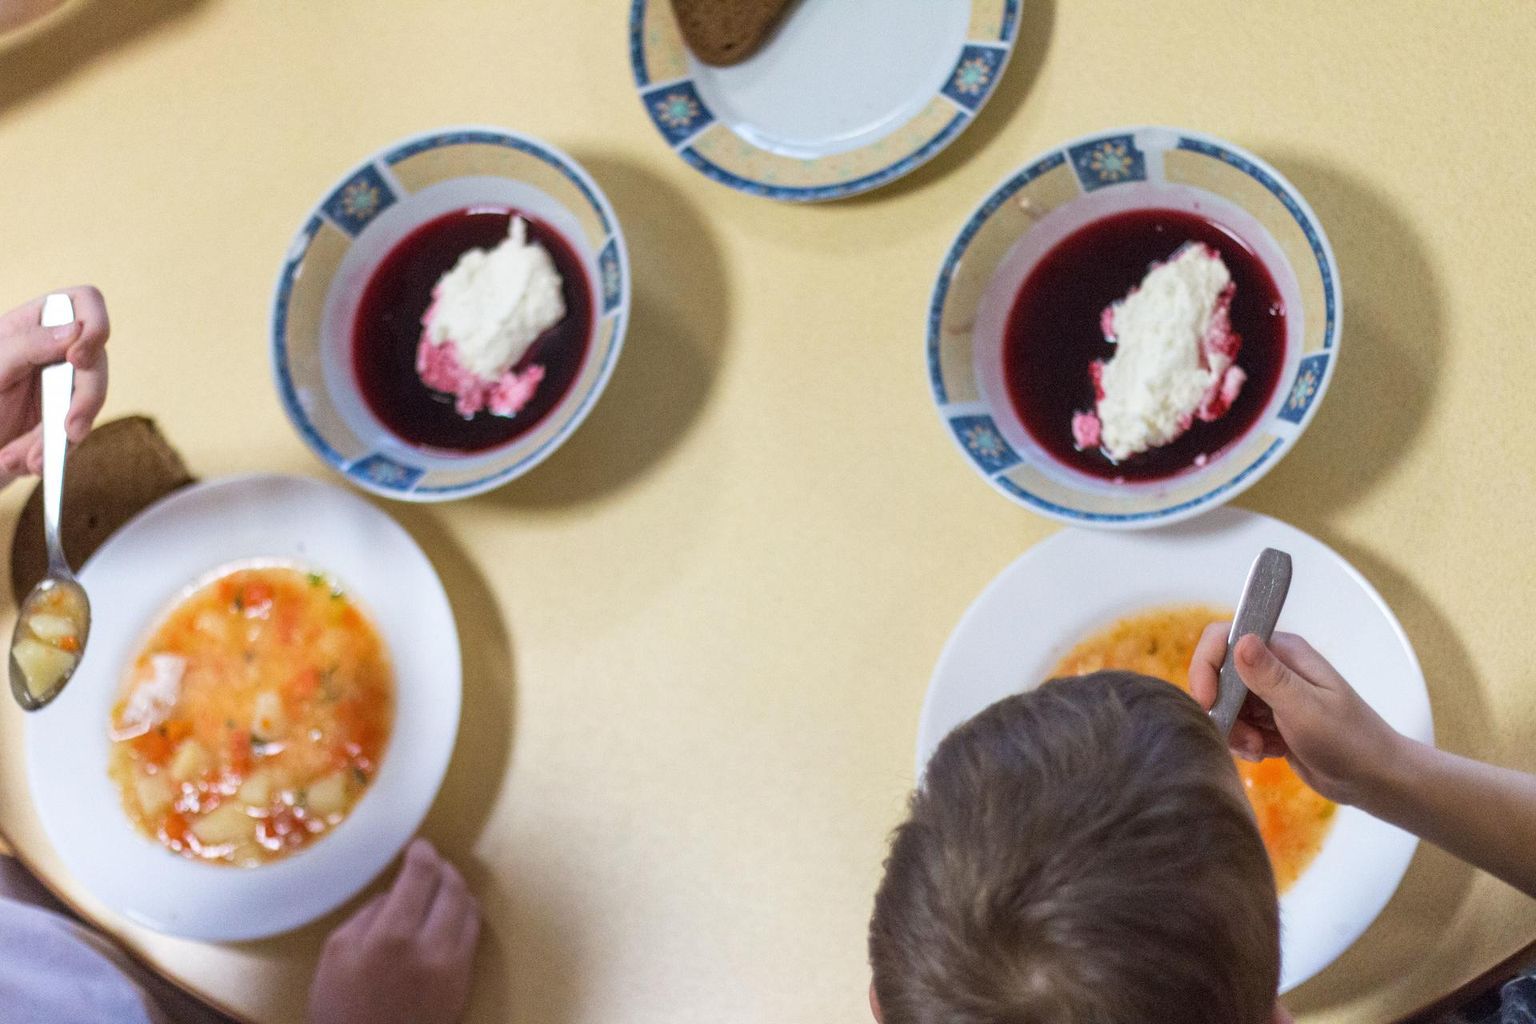 Valga lasteaiad ei jää toitlustaja vahetusest hoolimata söögita.
Foto on illustreeriv.